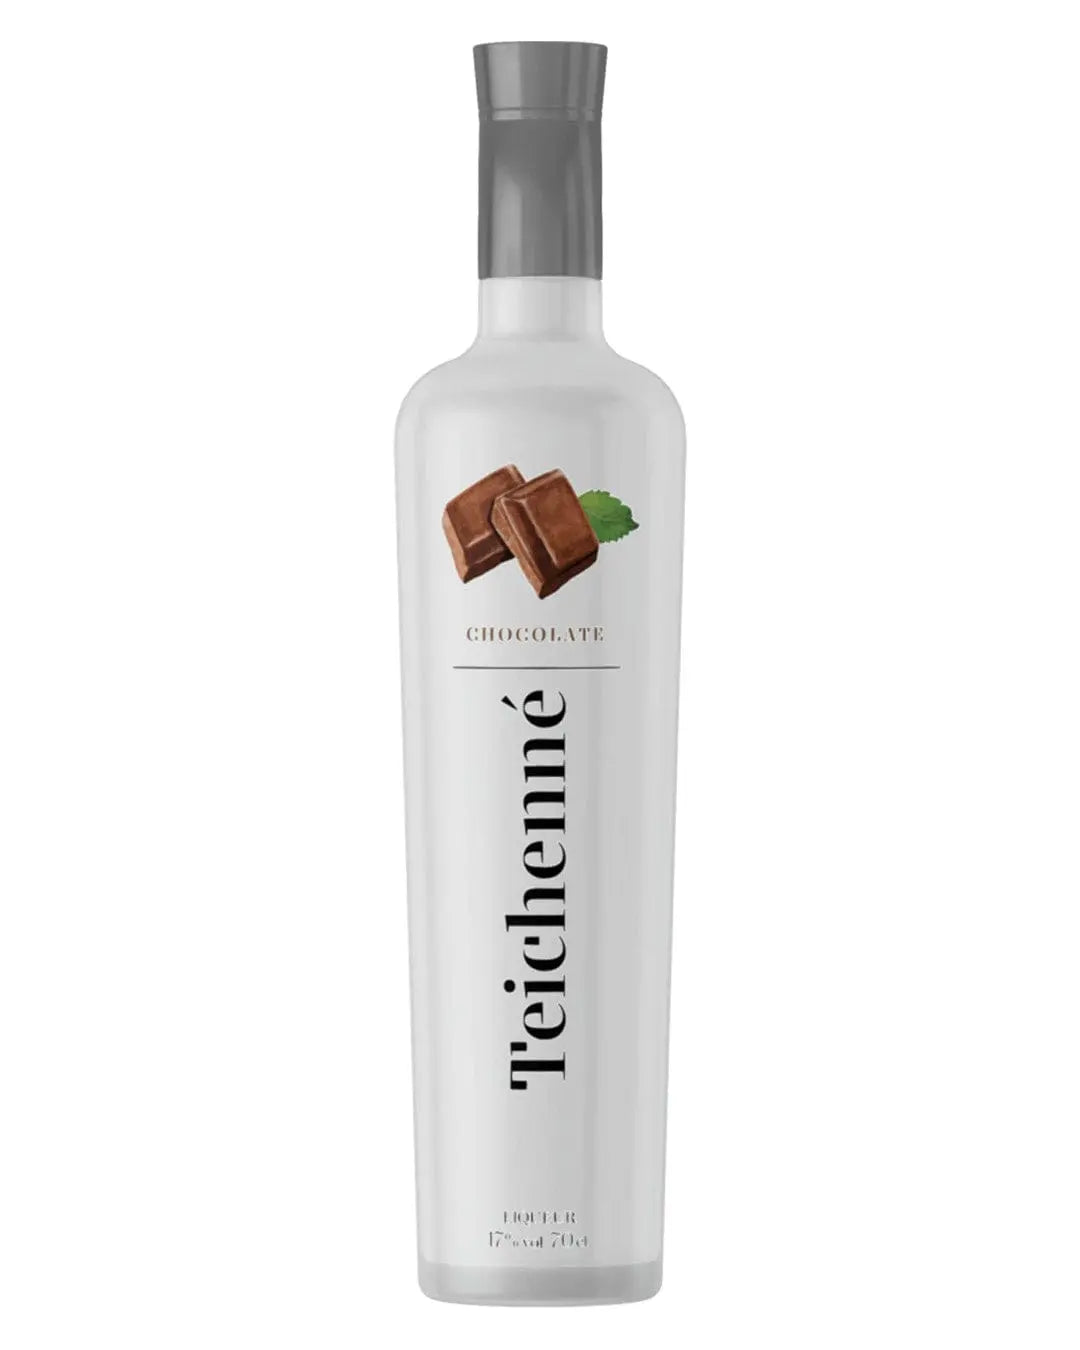 Teichenne Chocolate Schnapps Liqueur, 70 cl Liqueurs & Other Spirits